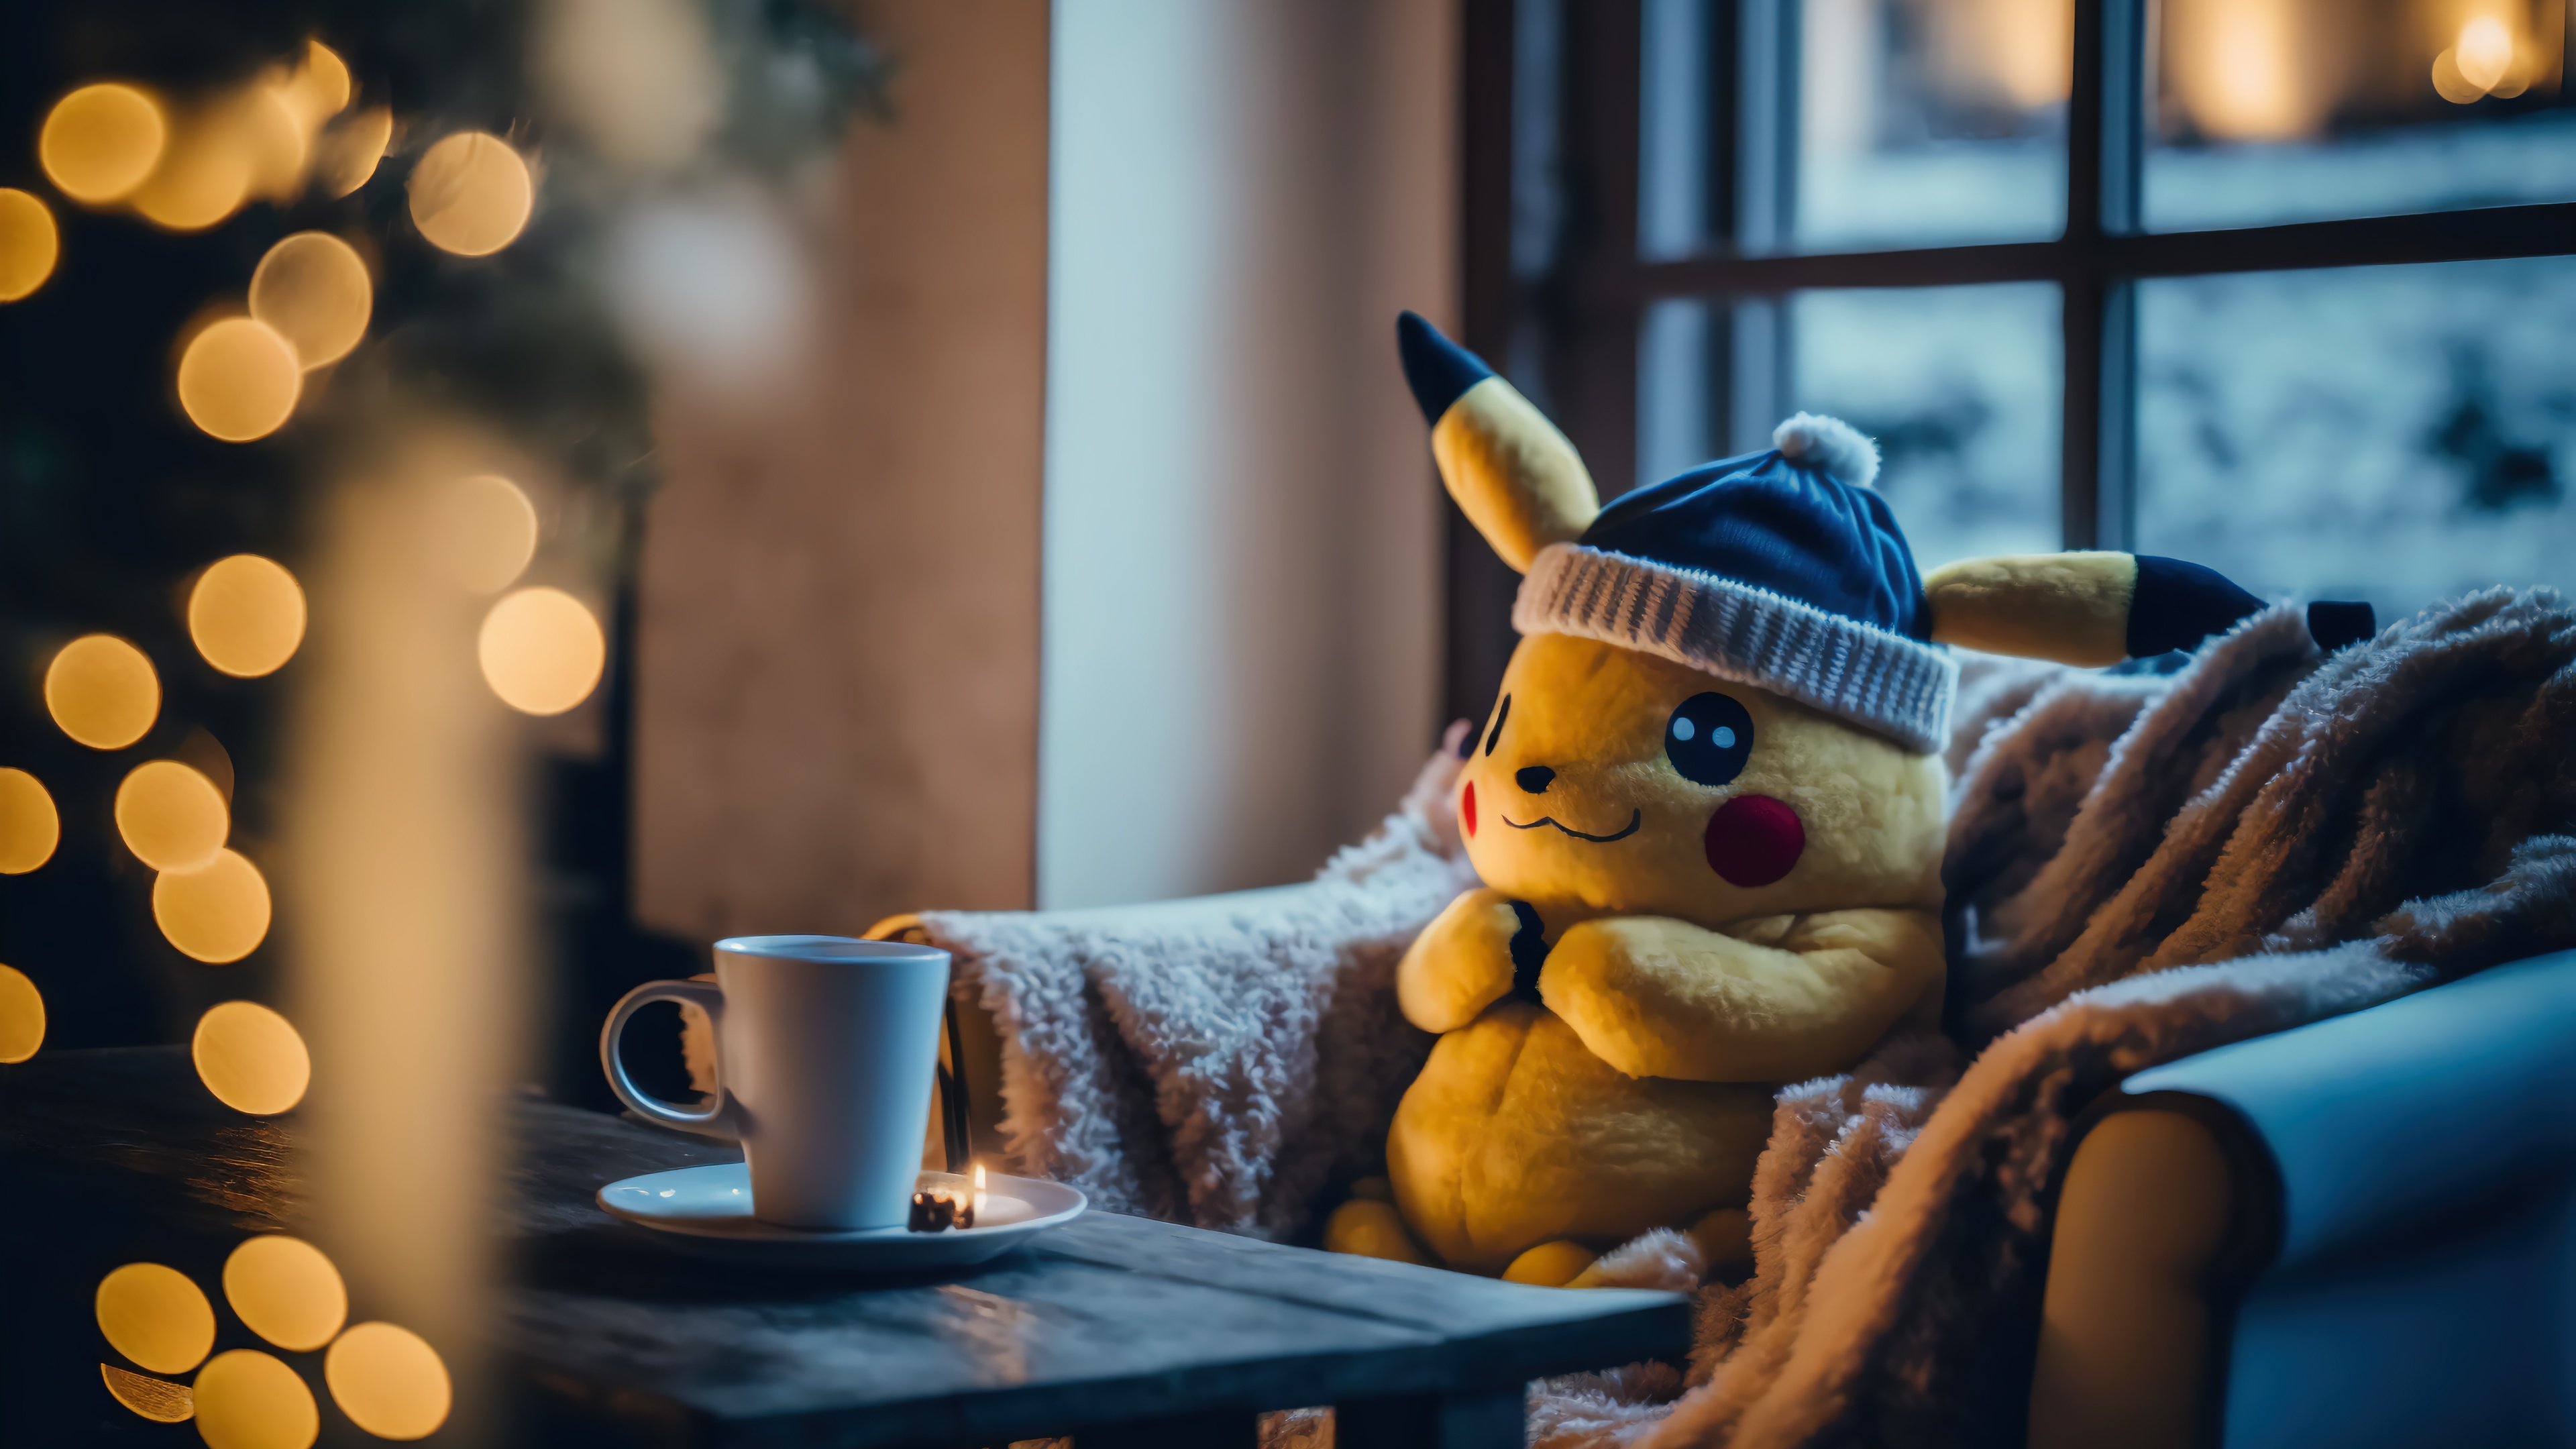 Fondos de pantalla Pikachu en navidad